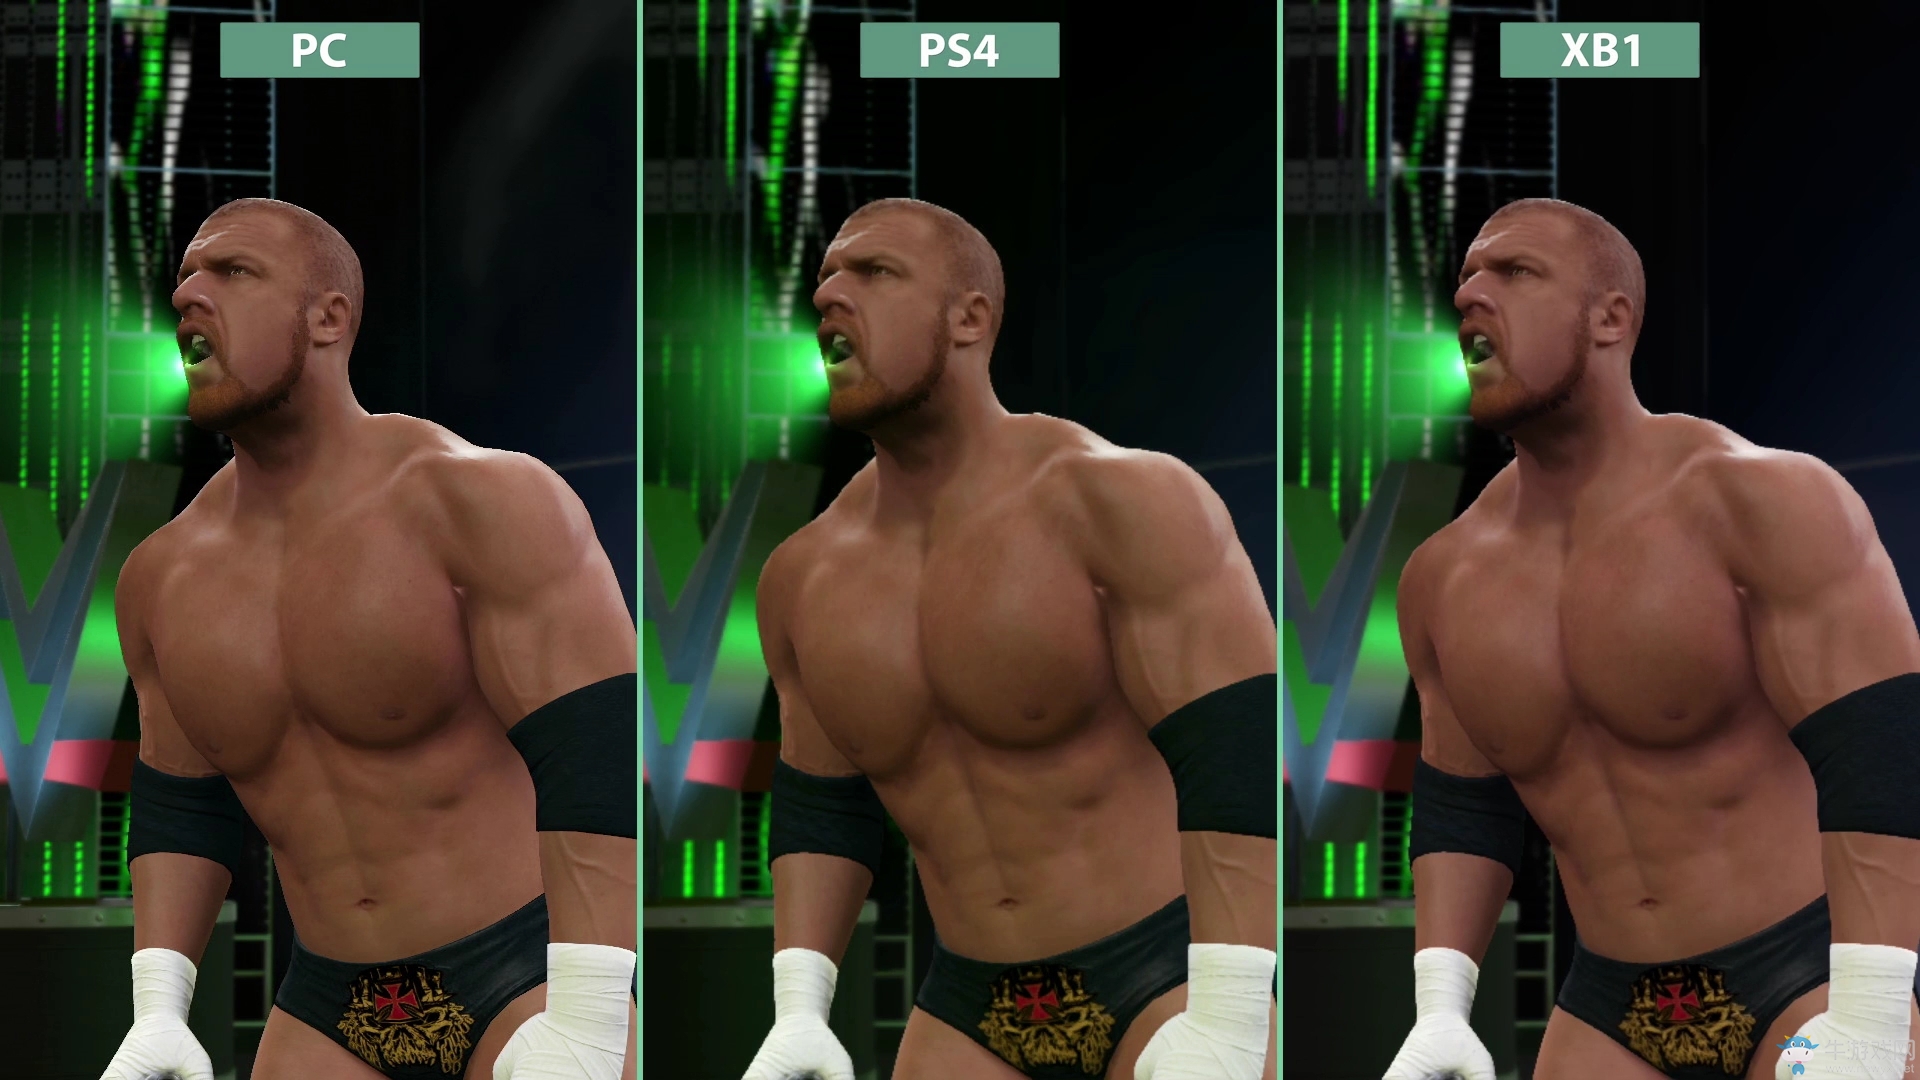 《WWE 2K17》PC VS 主机画质对比 没白等啊！